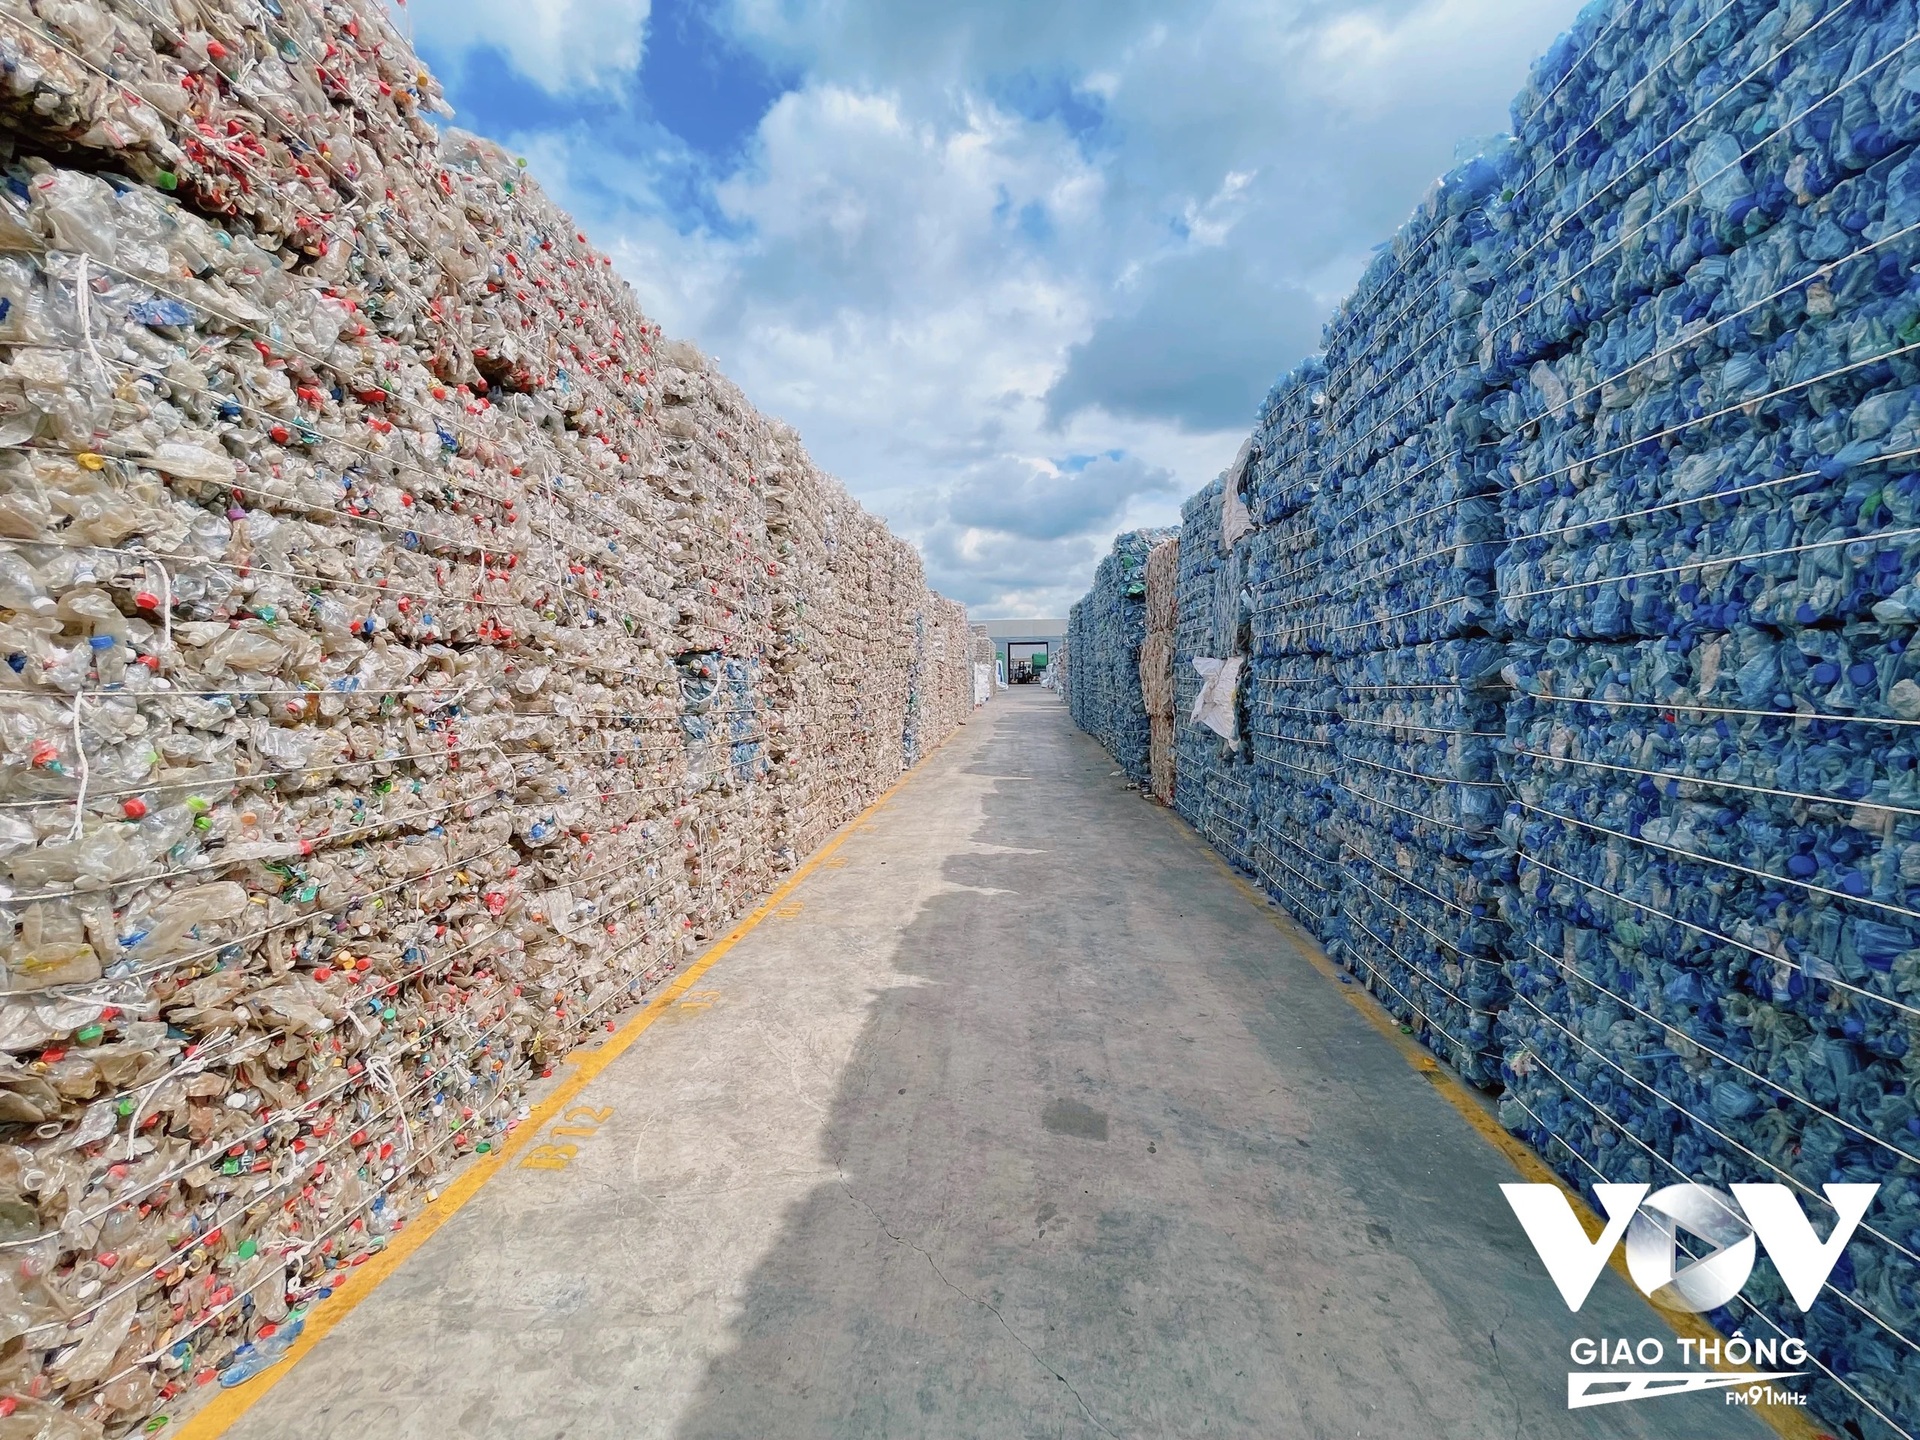 Theo ước tính mỗi năm Việt Nam tiêu thụ khoảng 6,2 triệu tấn nhựa. Điều này cũng đồng nghĩa với lượng rác thải nhựa thải ra rất lớn cần phải xử lý